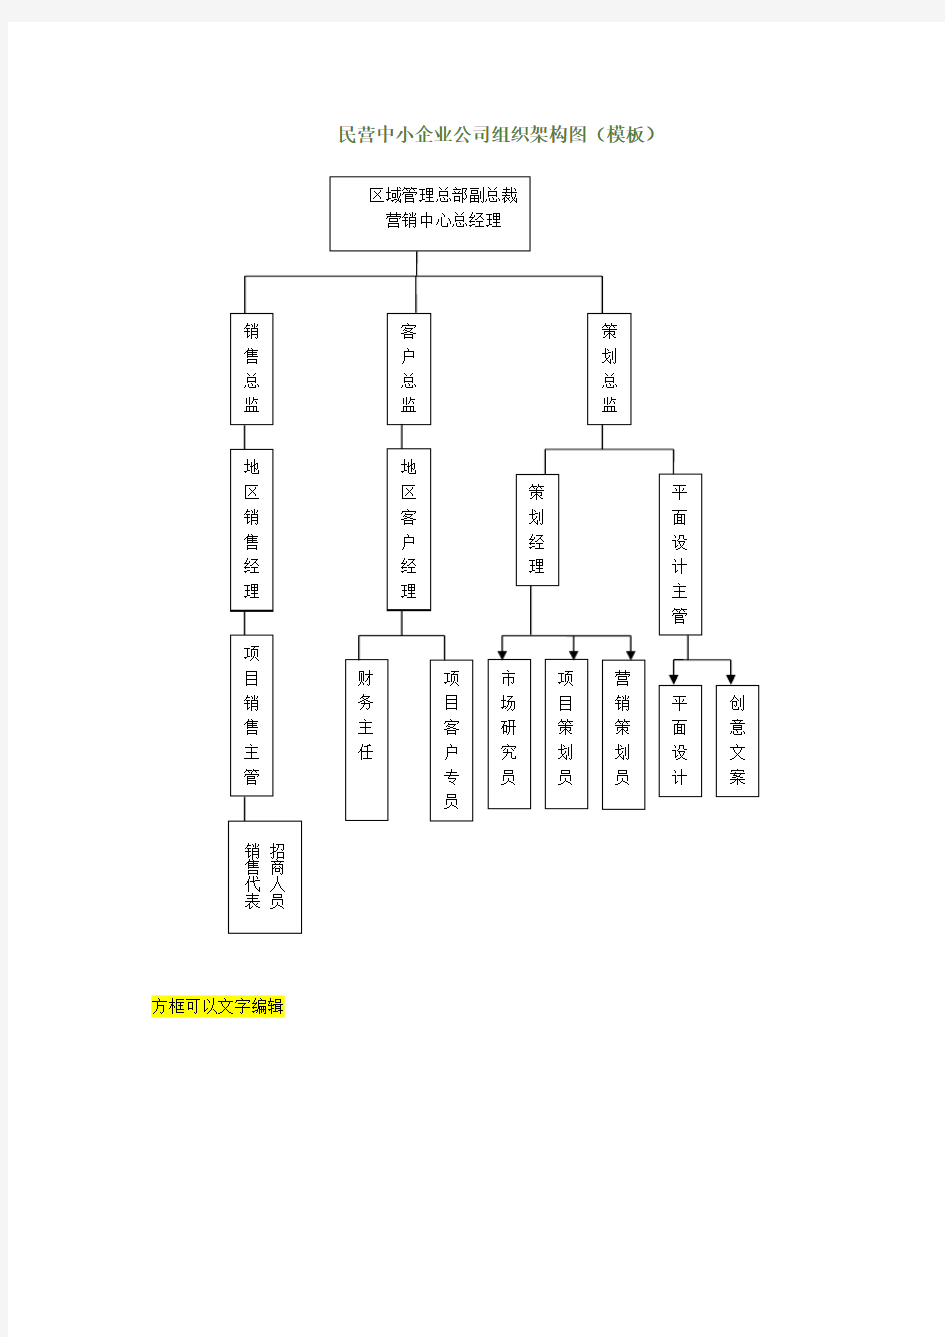 民营中小企业公司组织架构图(模板)